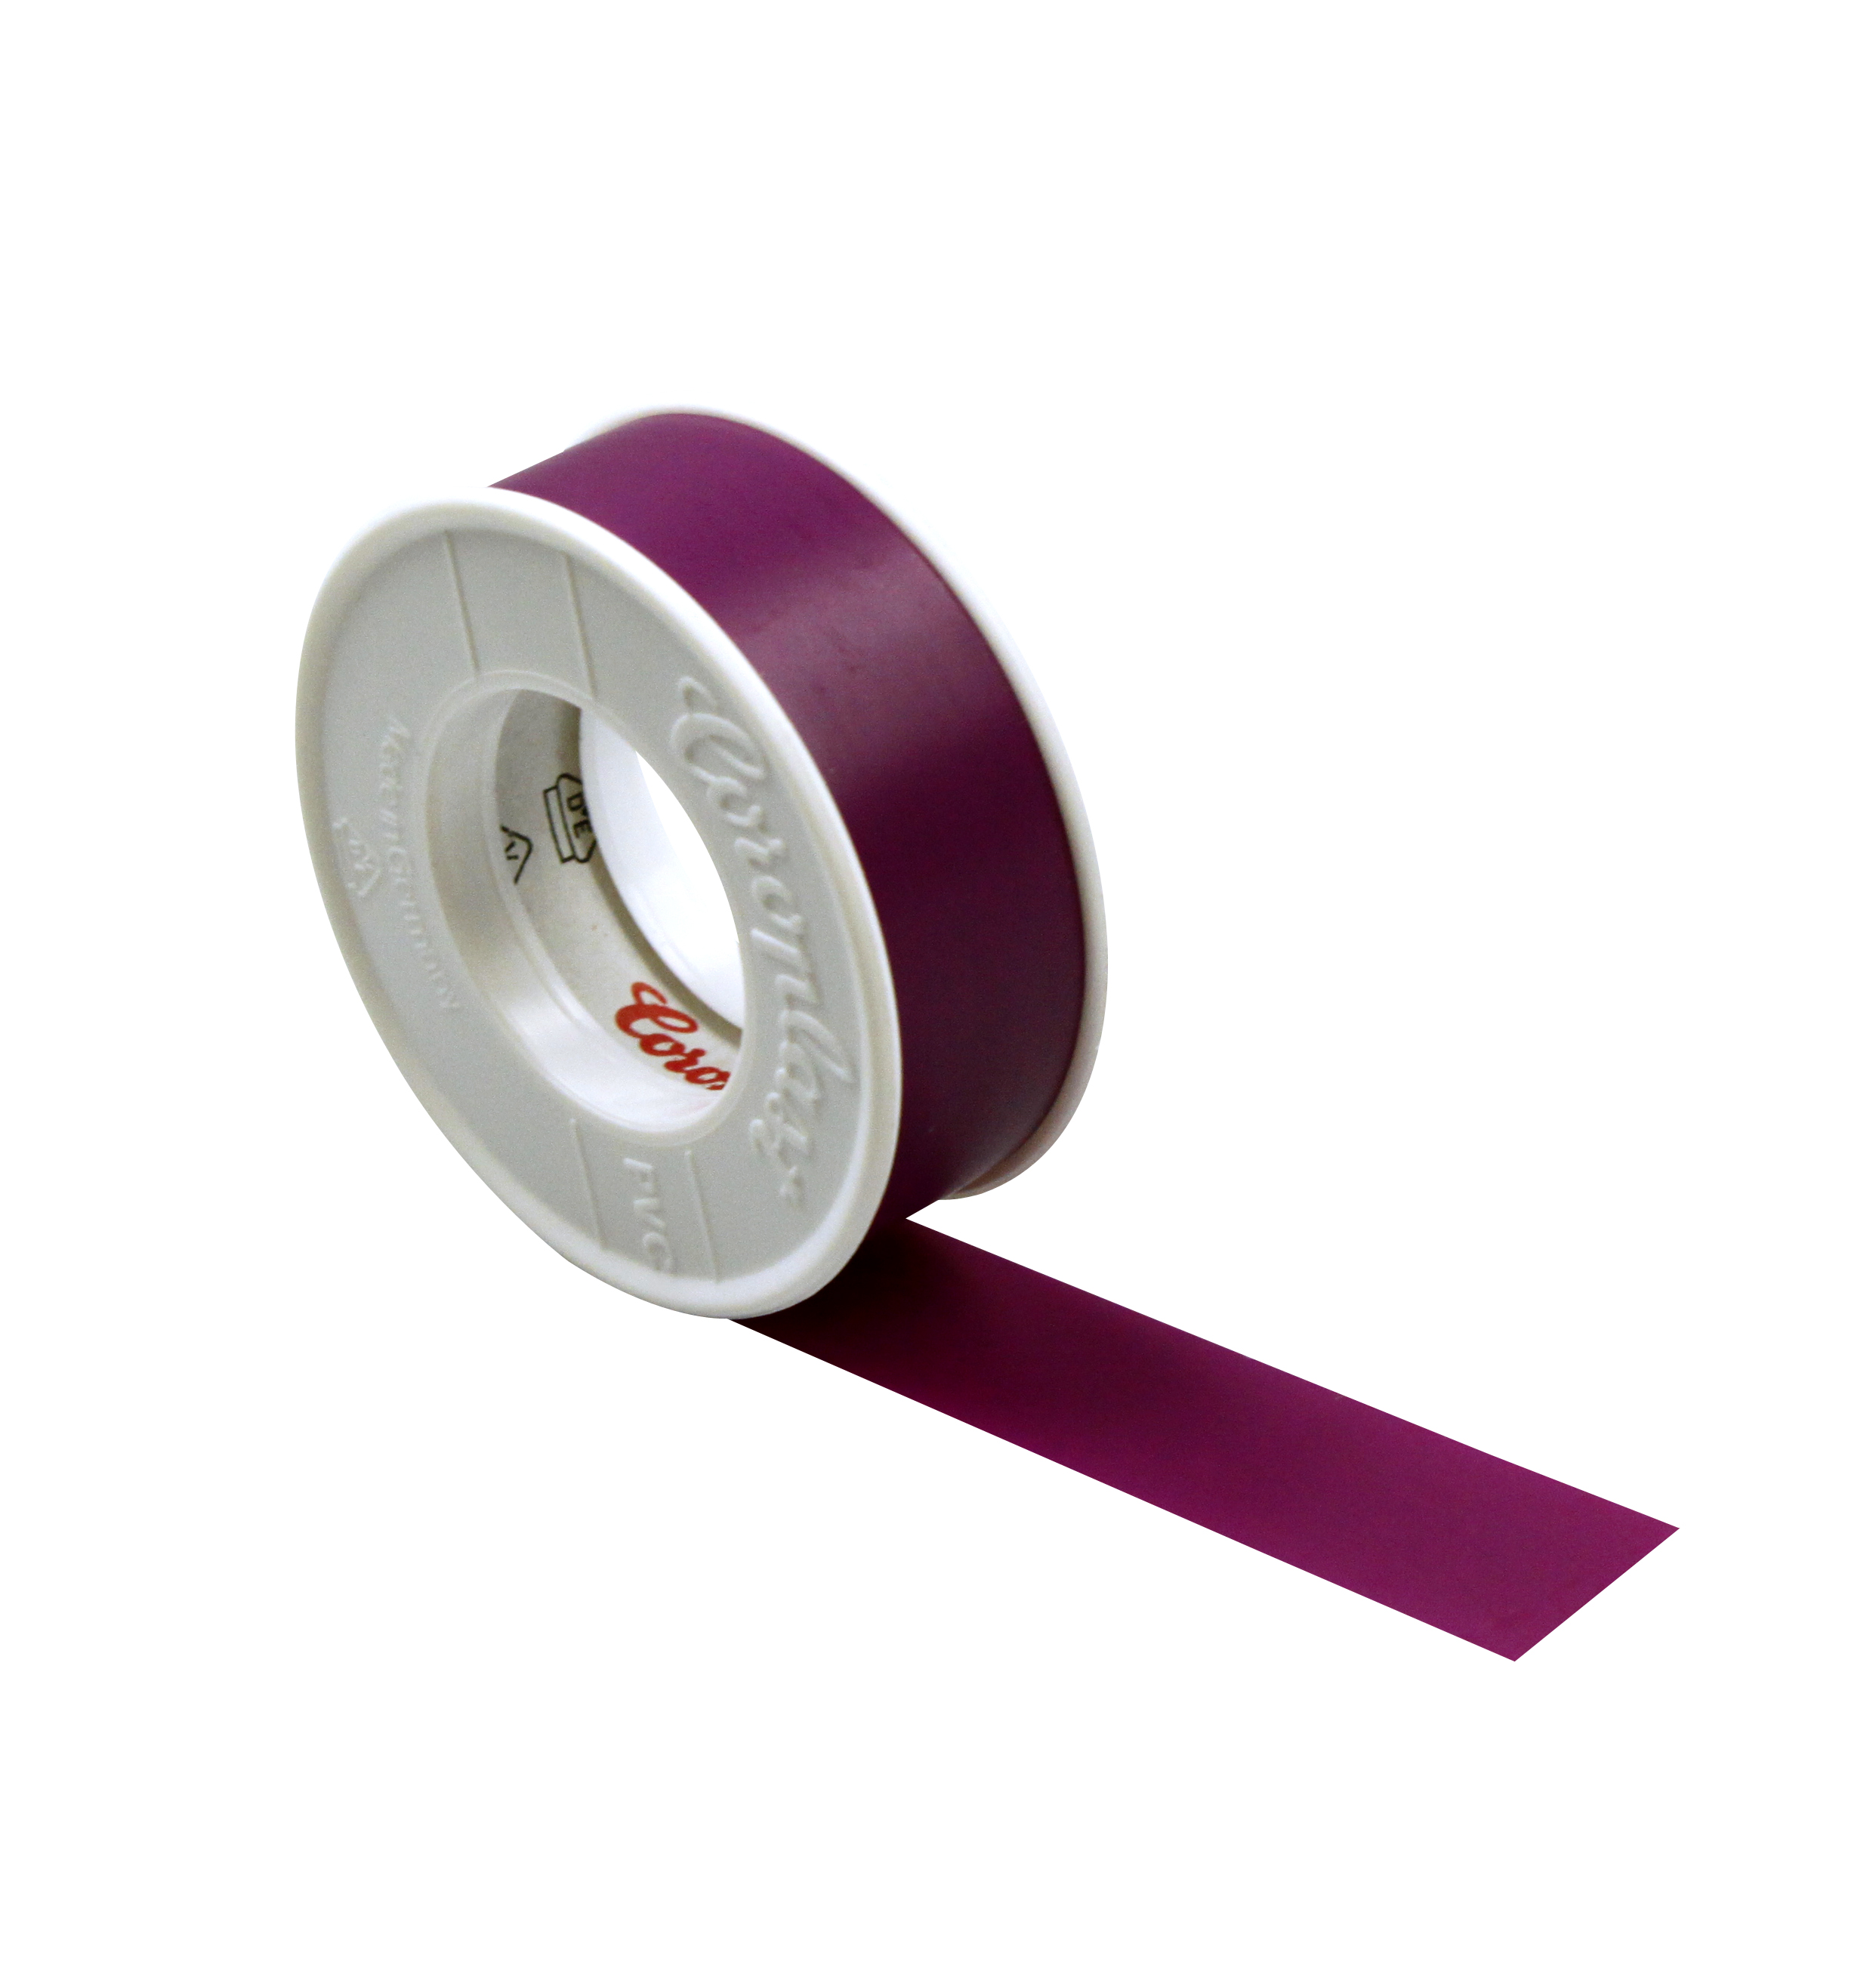 Foto: Isolierband violett 15mm x 10m-Coroplast (c) Schrack